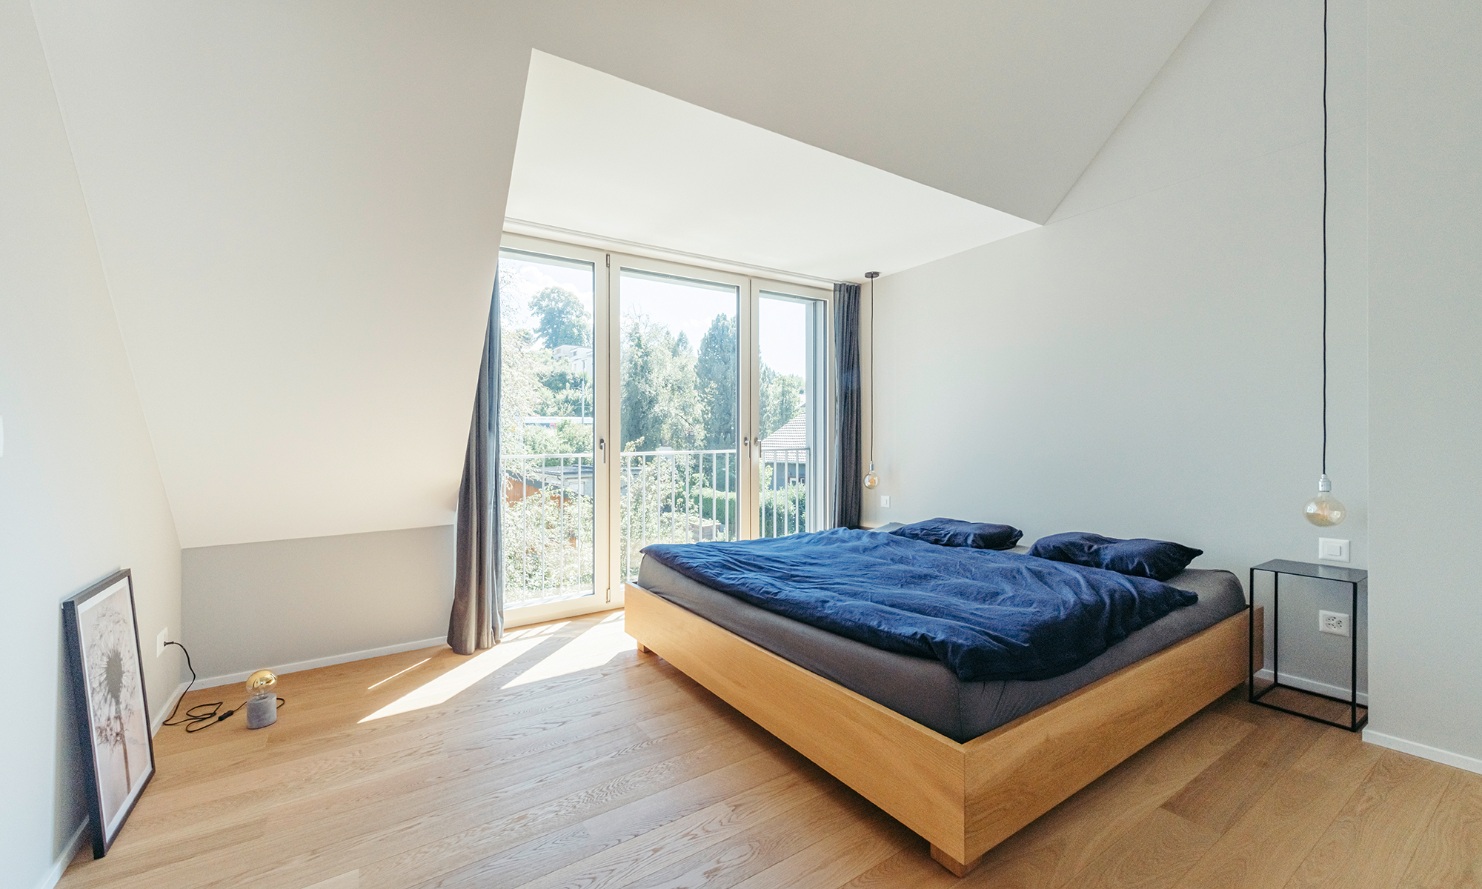 Chambre lumineuse avec lit double et plancher en parquet dans la maison individuelle surélevée